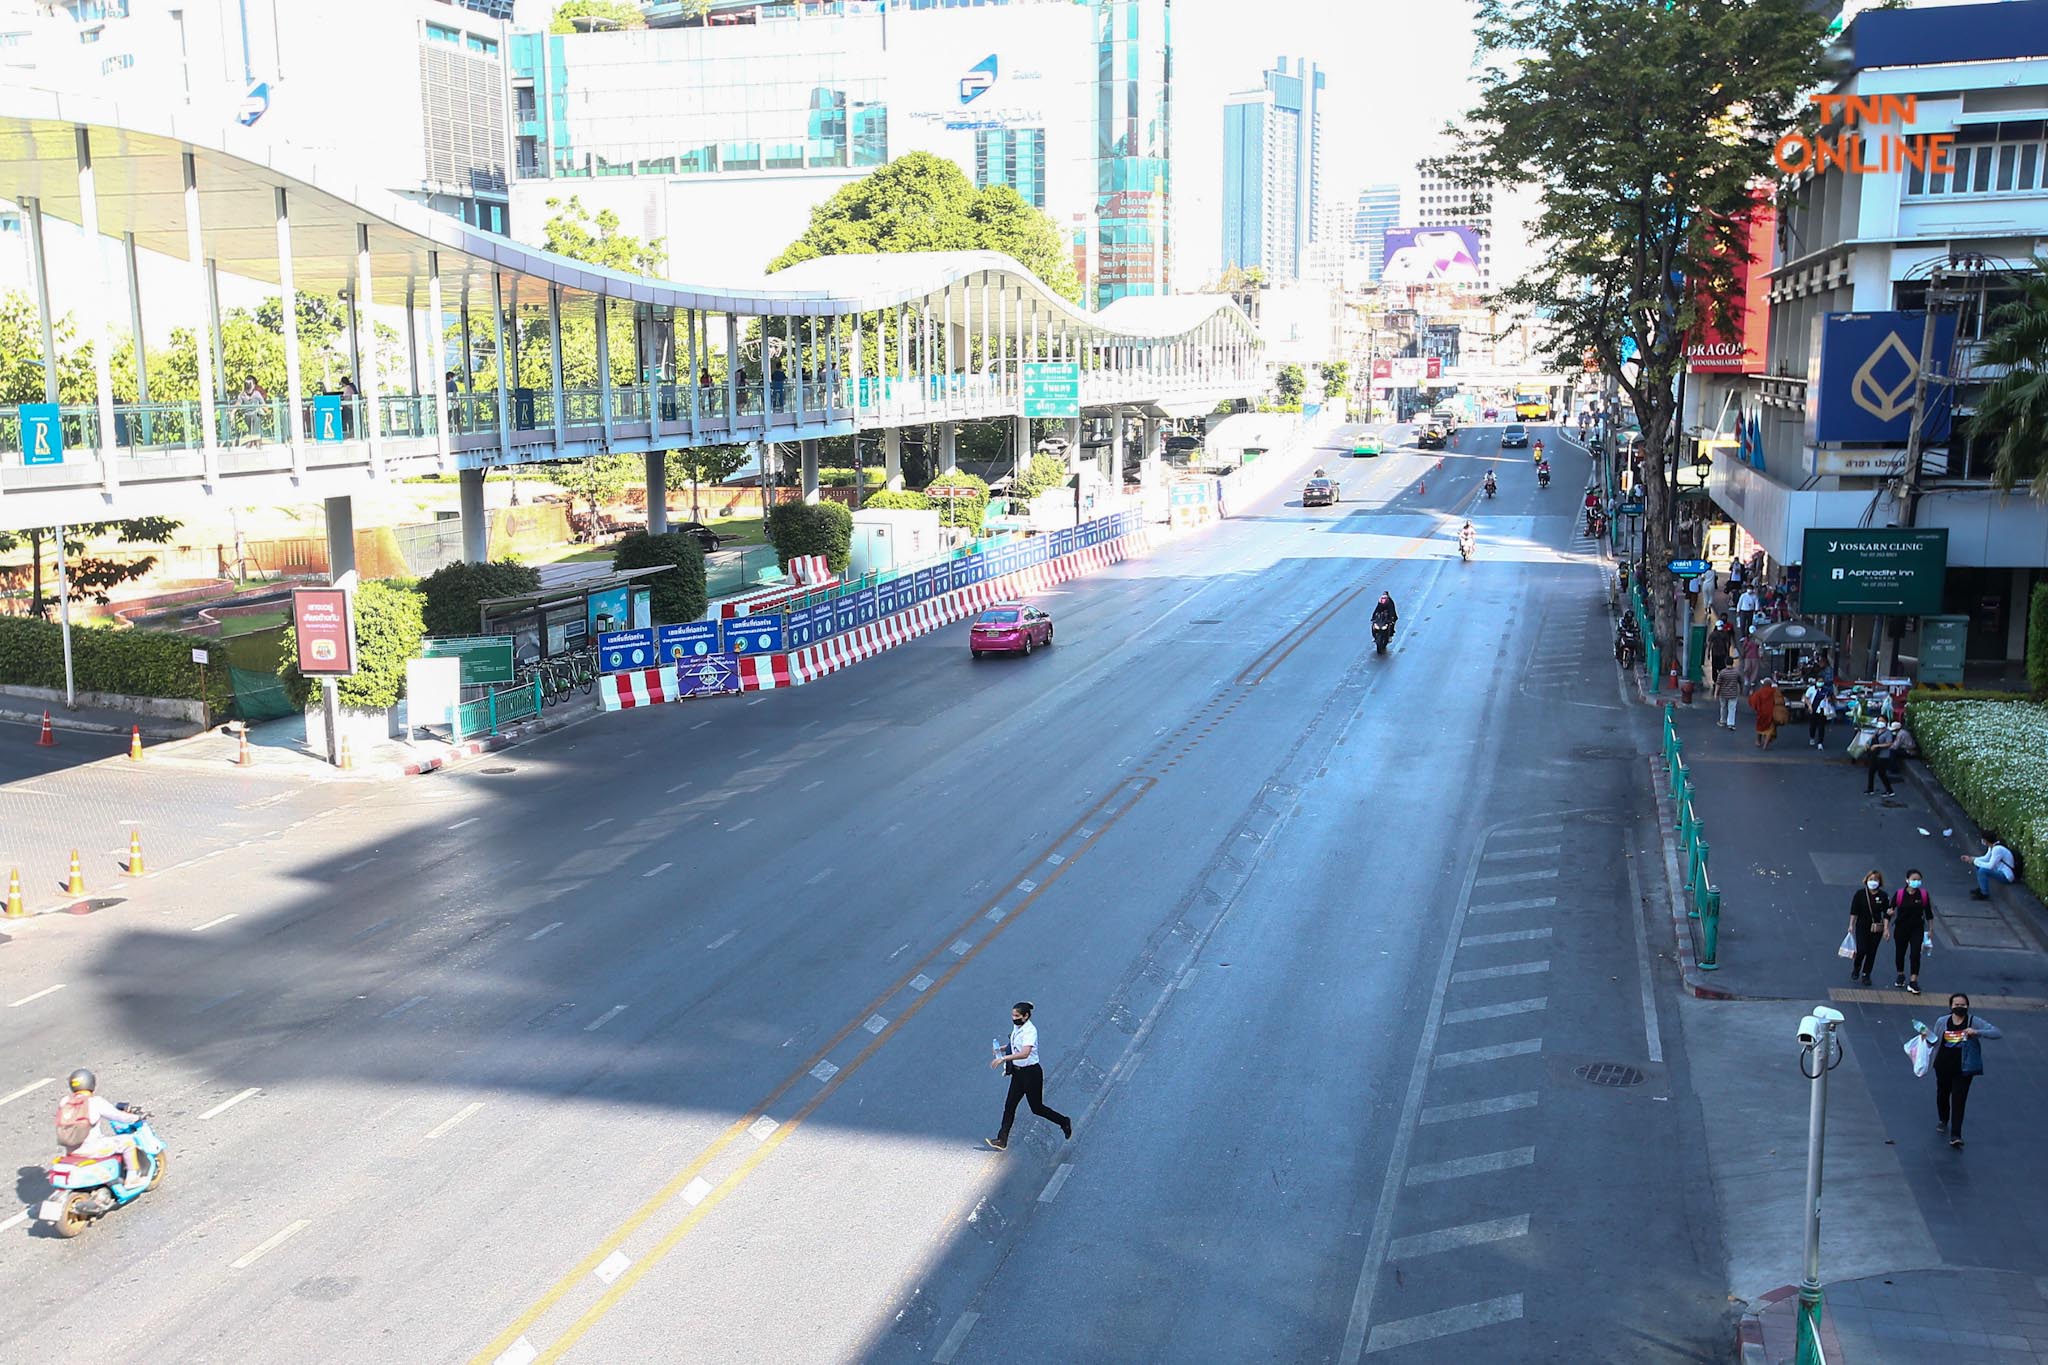 ประมวลภาพ กทม. ถนนโล่งในวันศุกร์สุดท้ายของปี 